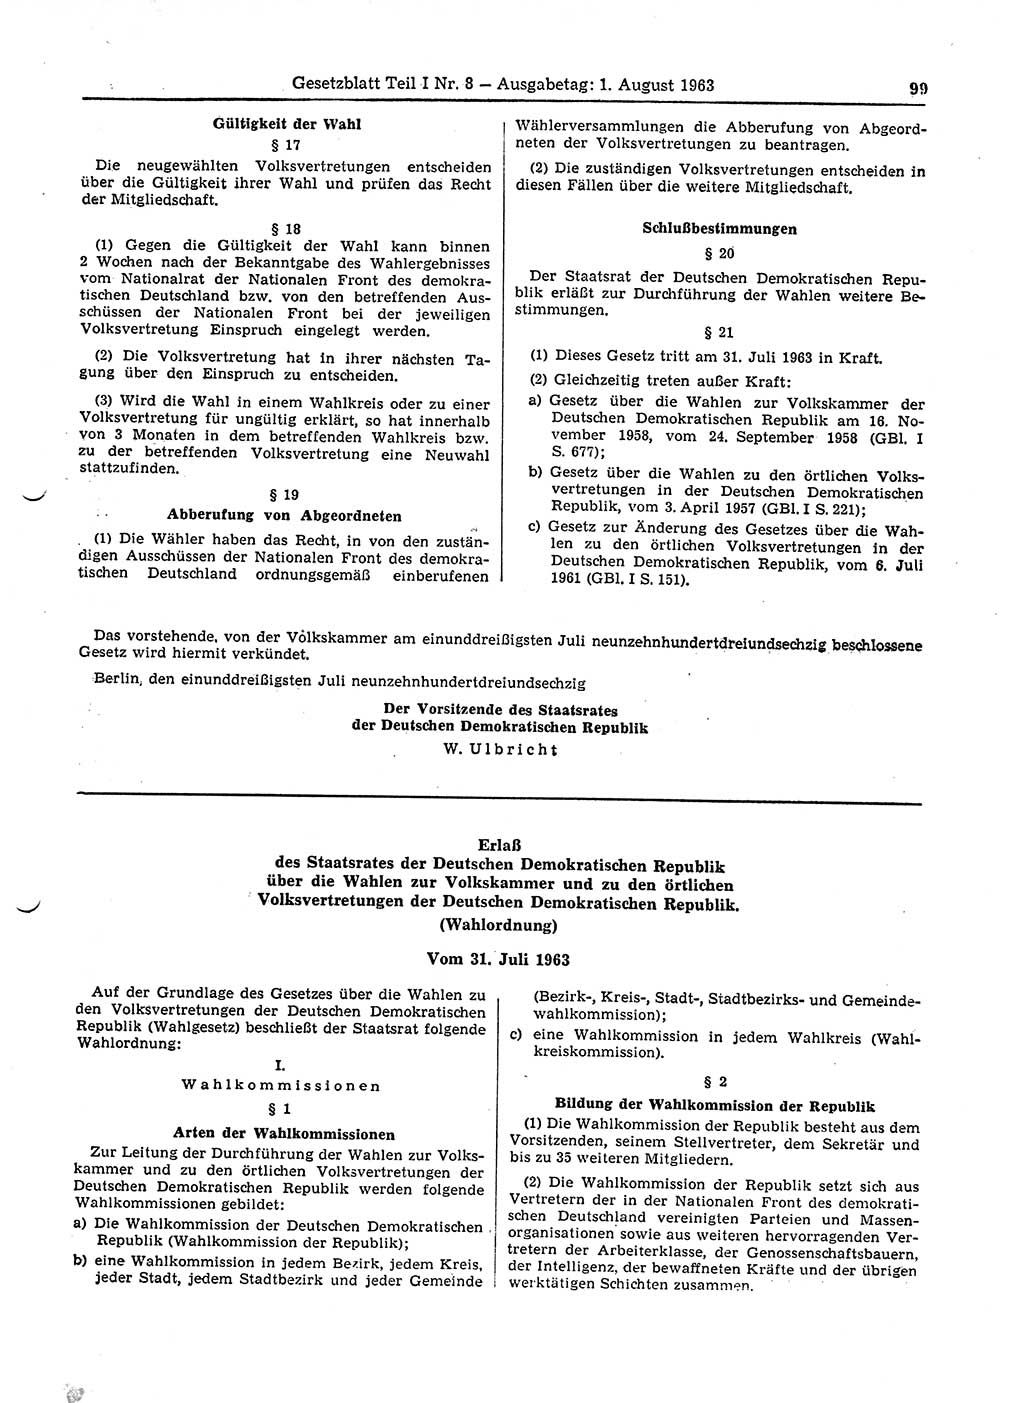 Gesetzblatt (GBl.) der Deutschen Demokratischen Republik (DDR) Teil Ⅰ 1963, Seite 99 (GBl. DDR Ⅰ 1963, S. 99)